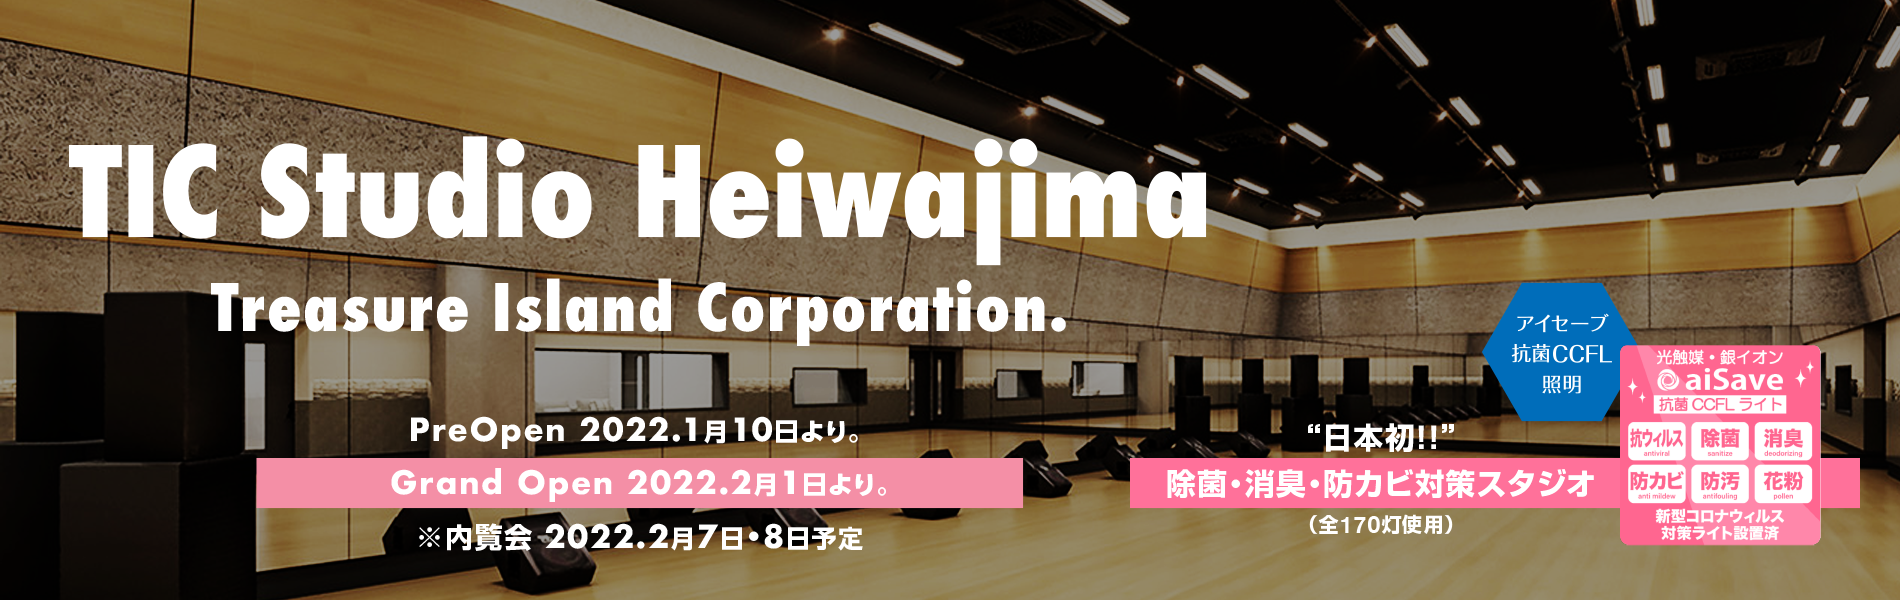 TIC Studio Heiwajima